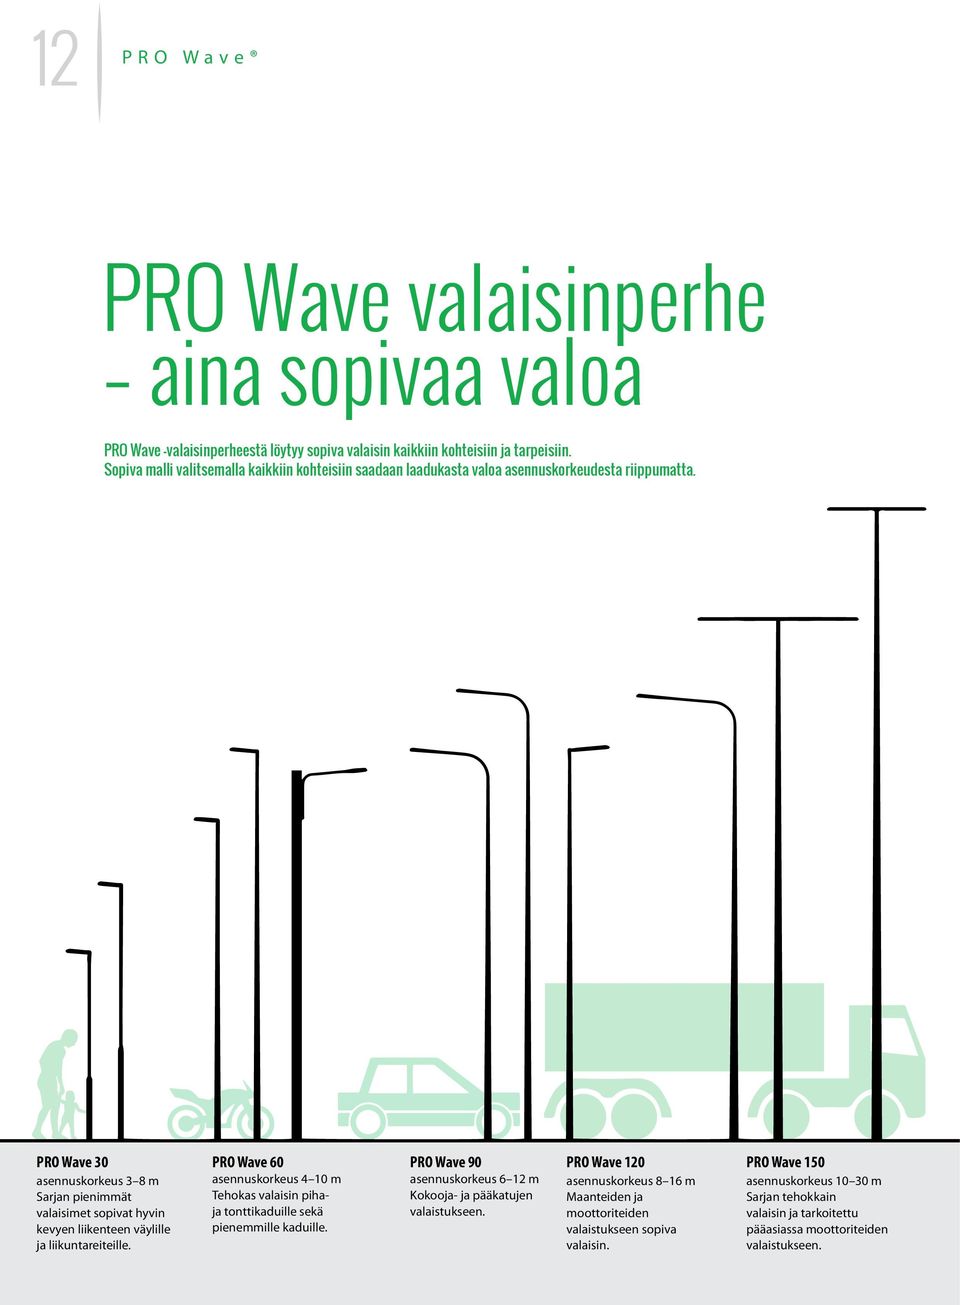 PRO Wave 30 asennuskorkeus 3 8 m Sarjan pienimmät valaisimet sopivat hyvin kevyen liikenteen väylille ja liikuntareiteille.